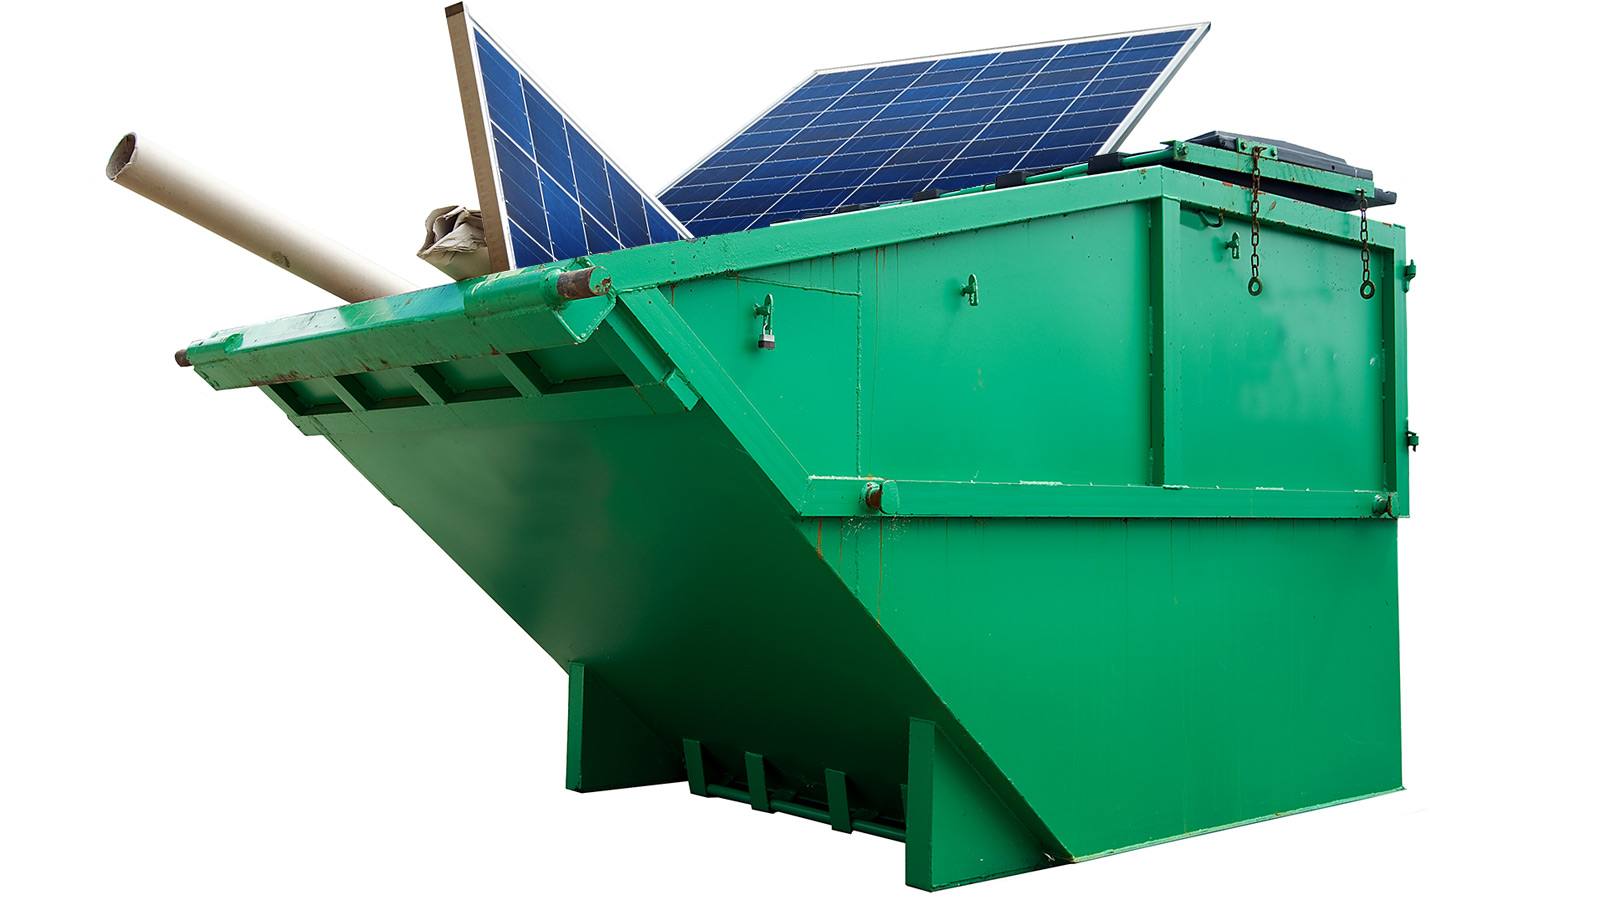 Solar panels in dumpster